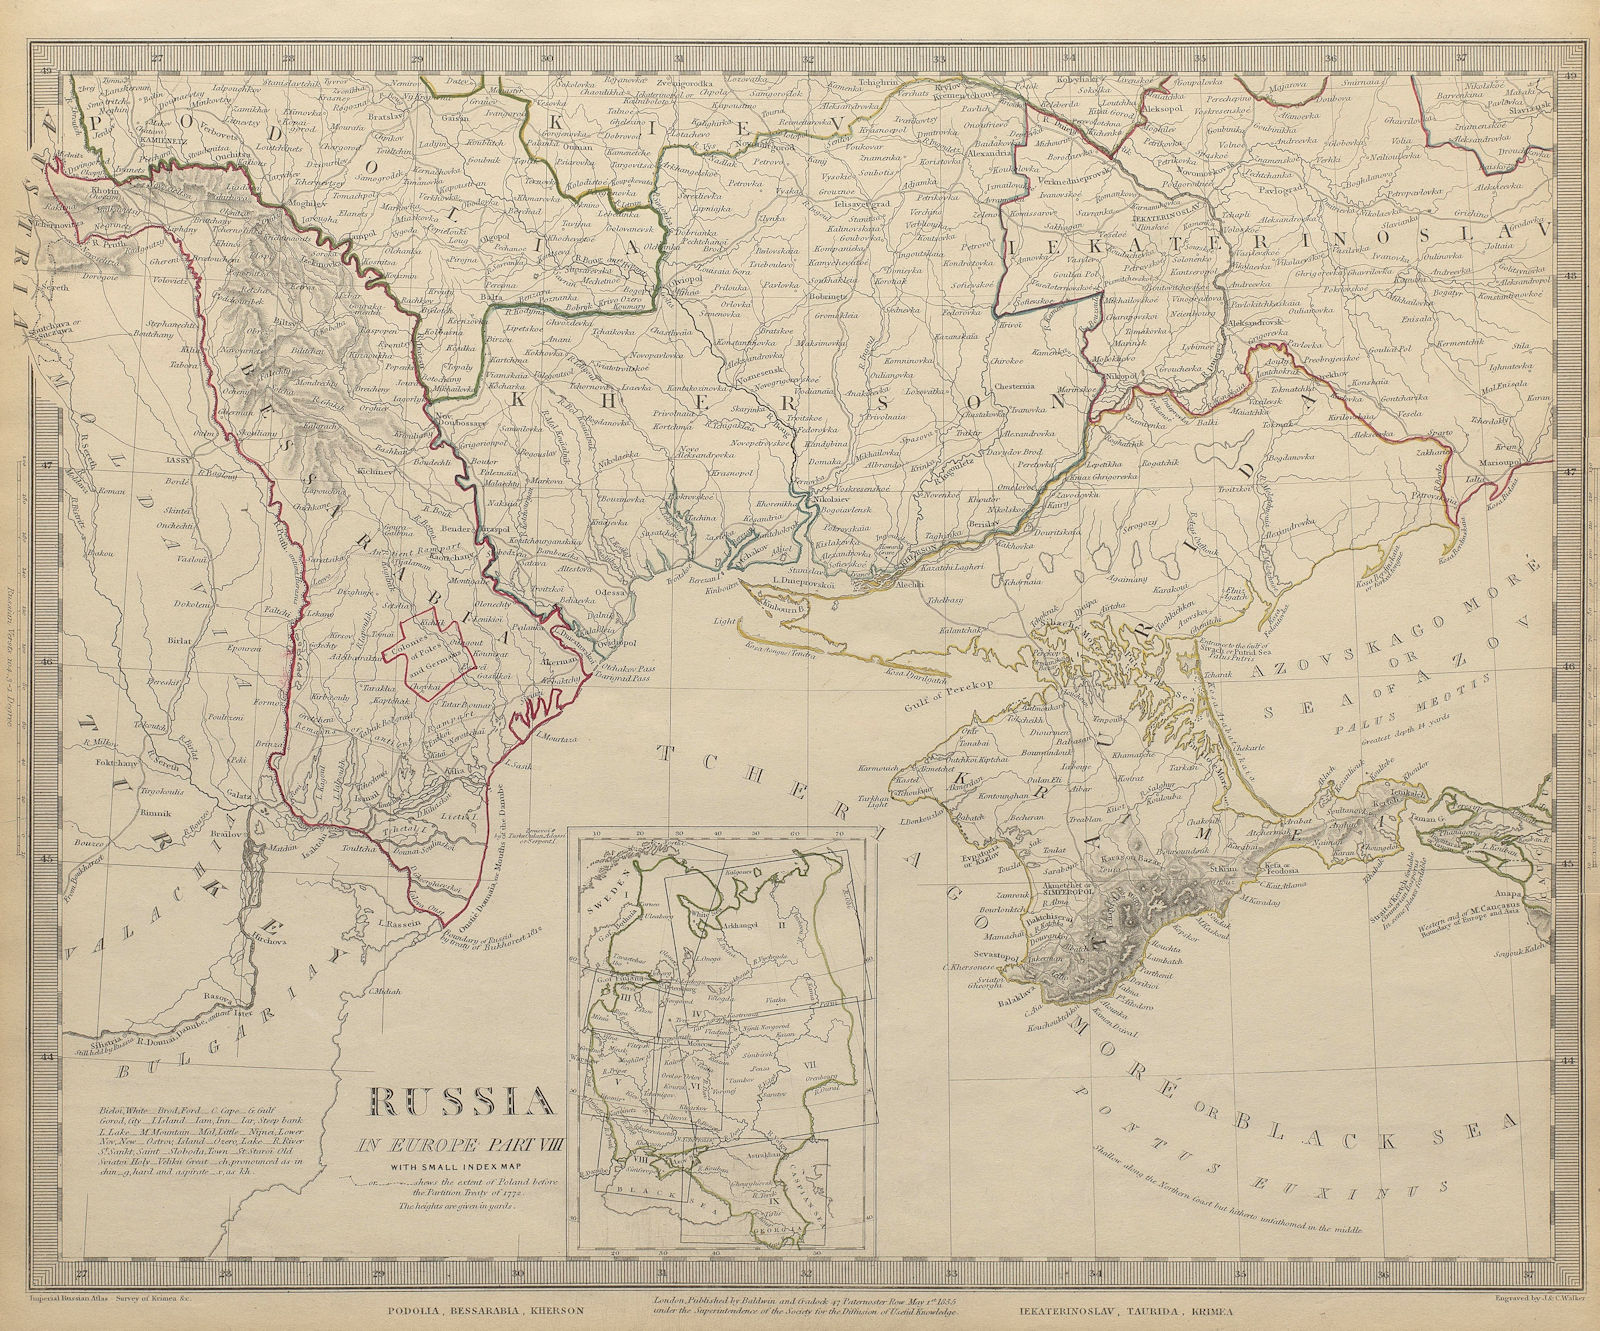 UKRAINE MOLDOVA. Podolia Bessarabia Kherson Taurida Crimea Kiev. SDUK 1844 map